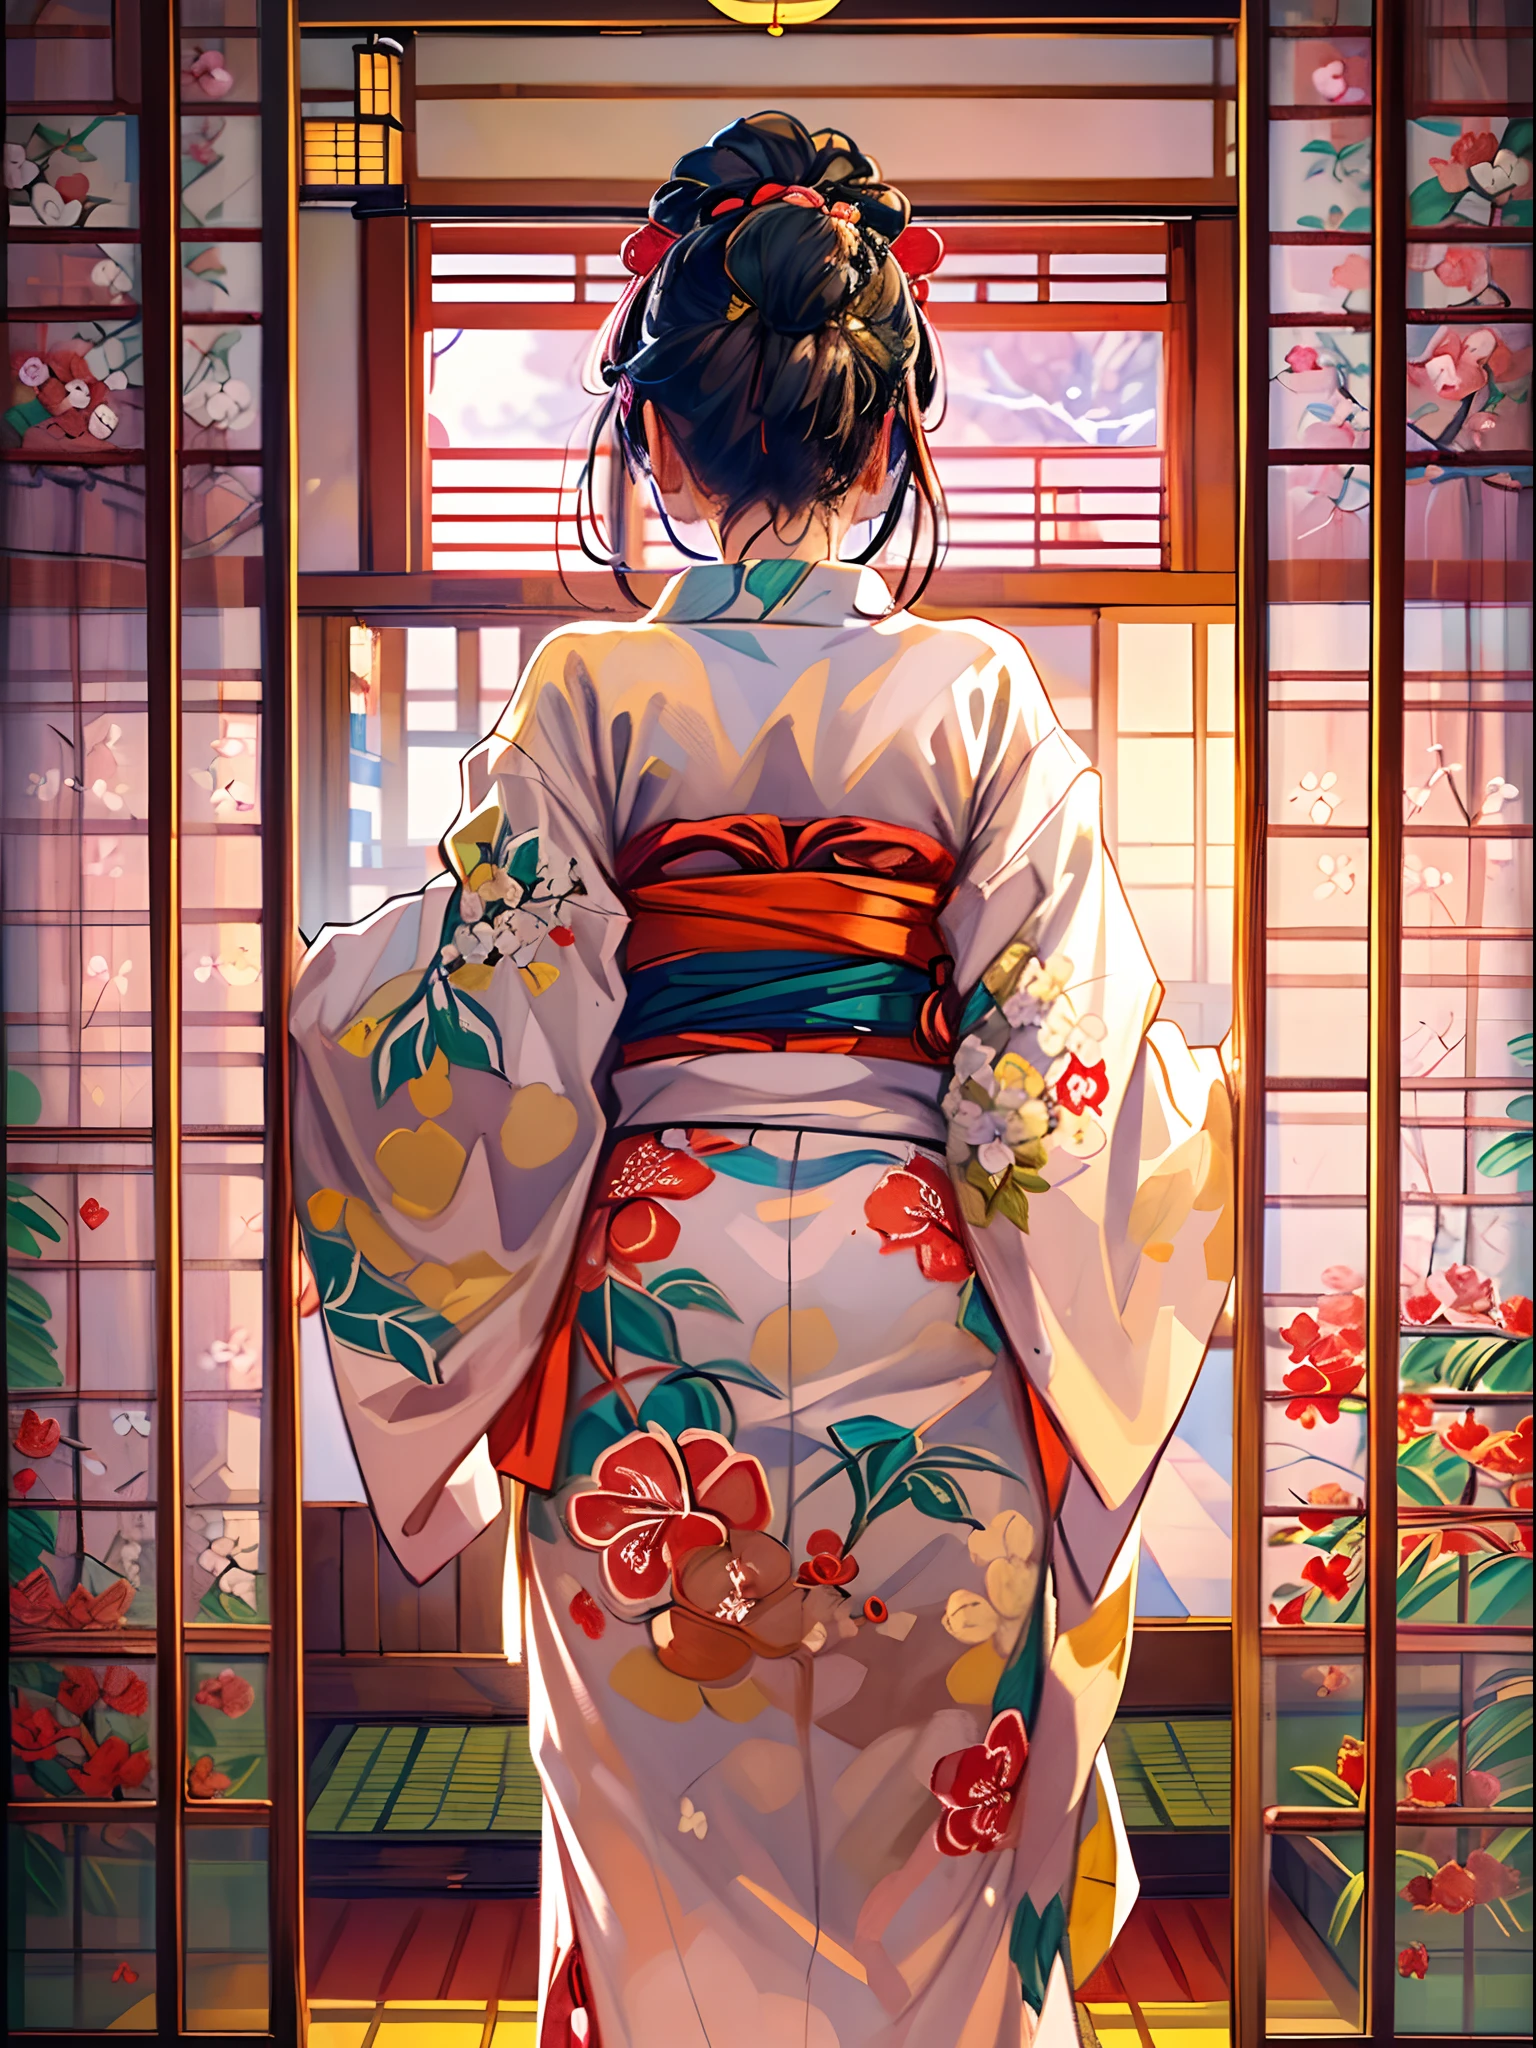 (Ein atemberaubendes Meisterwerk mit tadelloser Qualität:1.5), von hinten gefangen, schaue auf ihren Arsch, Schnur, mit lebendigen, gesättigte Farben, ein schönes Mädchen, Detailliertes Gesicht und Augen, traditional red Schnur, Schönheit Japans, umgeben vom authentischen Ambiente der Tatami-Matten, mit einem offenen Fenster, das die Szene umrahmt